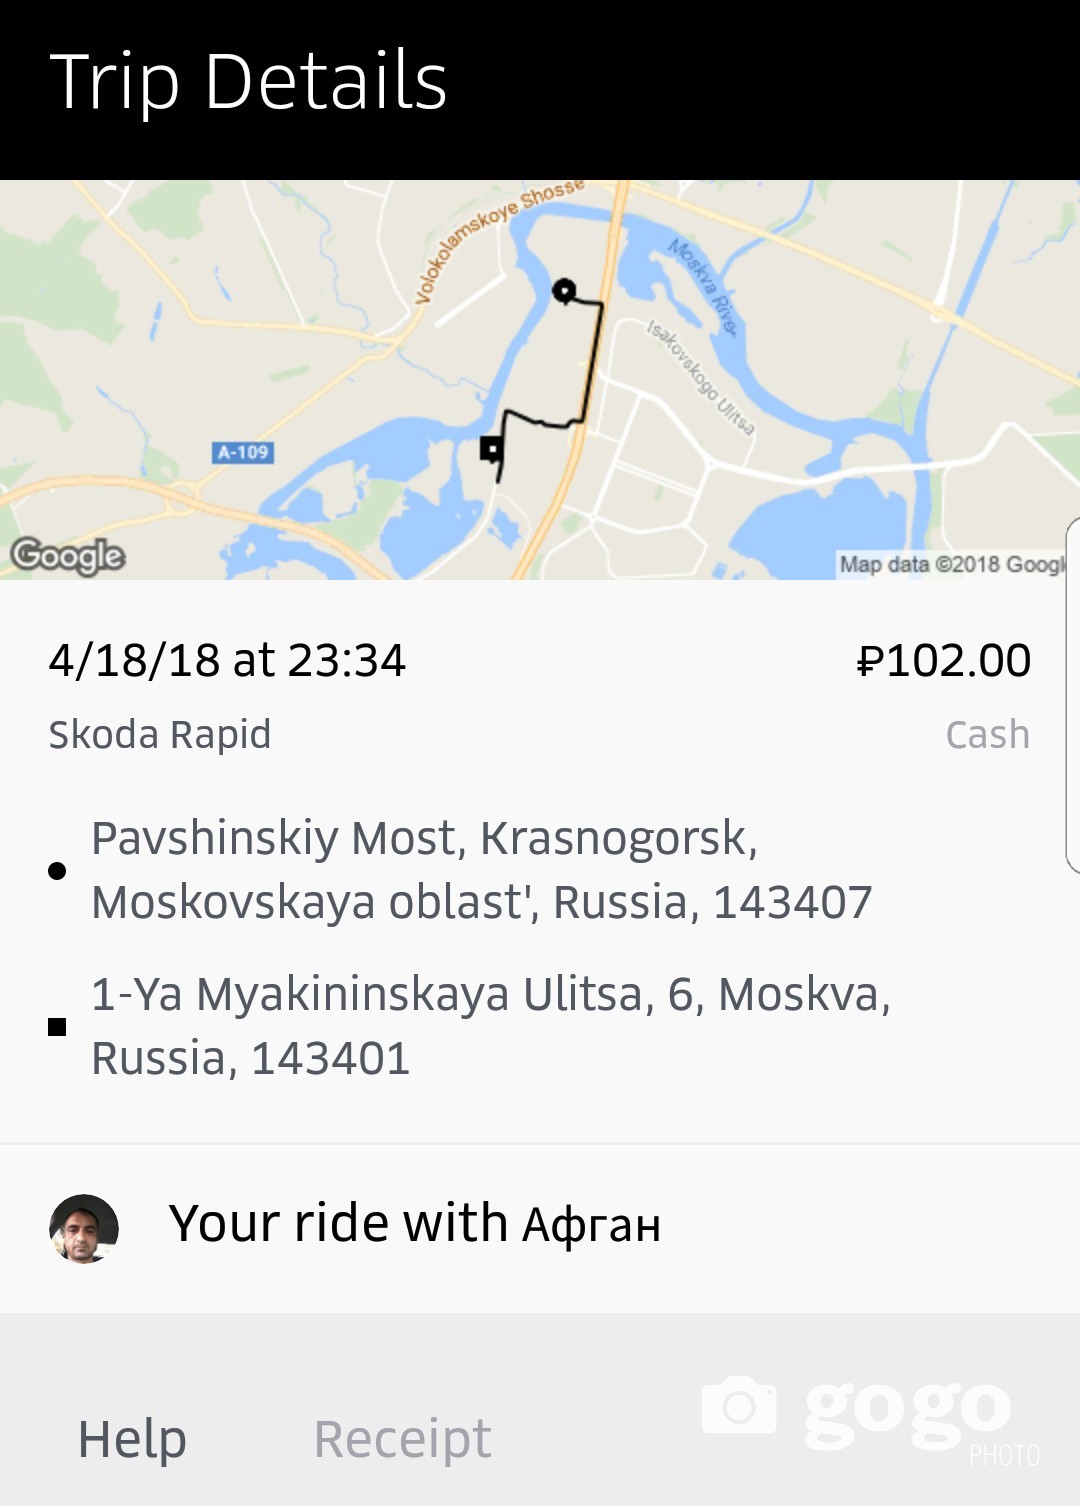 Энэ хоёр газрын хооронд нааш цааш явахад гадуур тохиролцоод явдаг такси 500 рубль /20 мян төг/ гэхэд UBER-ээр 100 рубль /4000 төг/ төлж байв